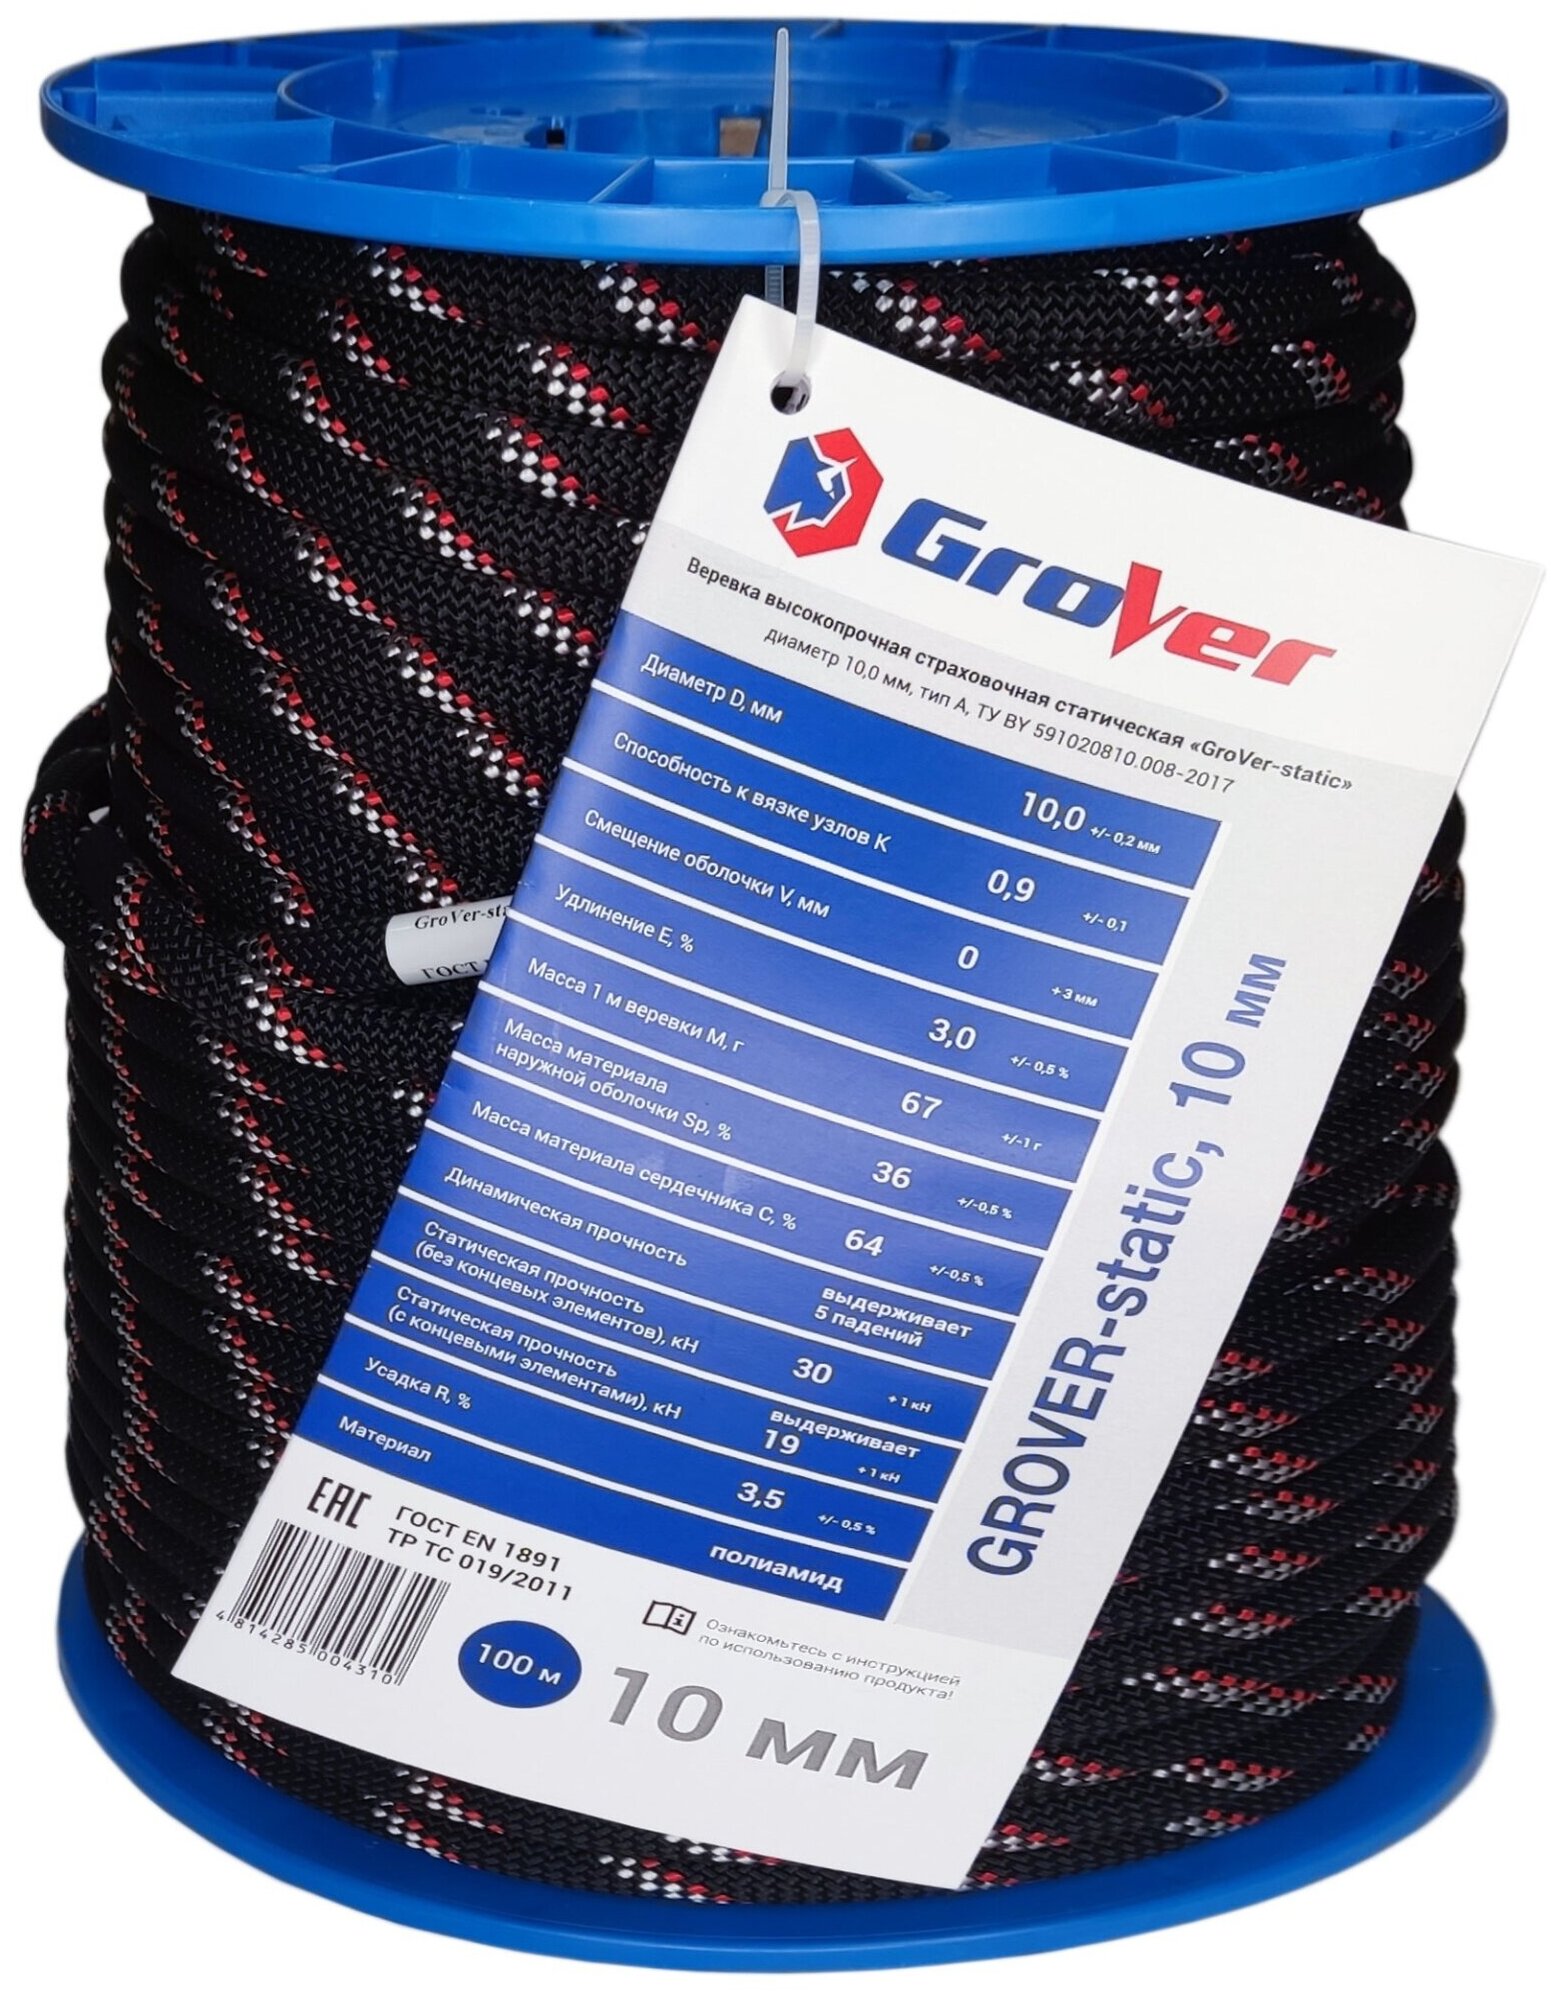 Верёвка статическая GroVer | 10 мм | АзотХимФортис (100 м)